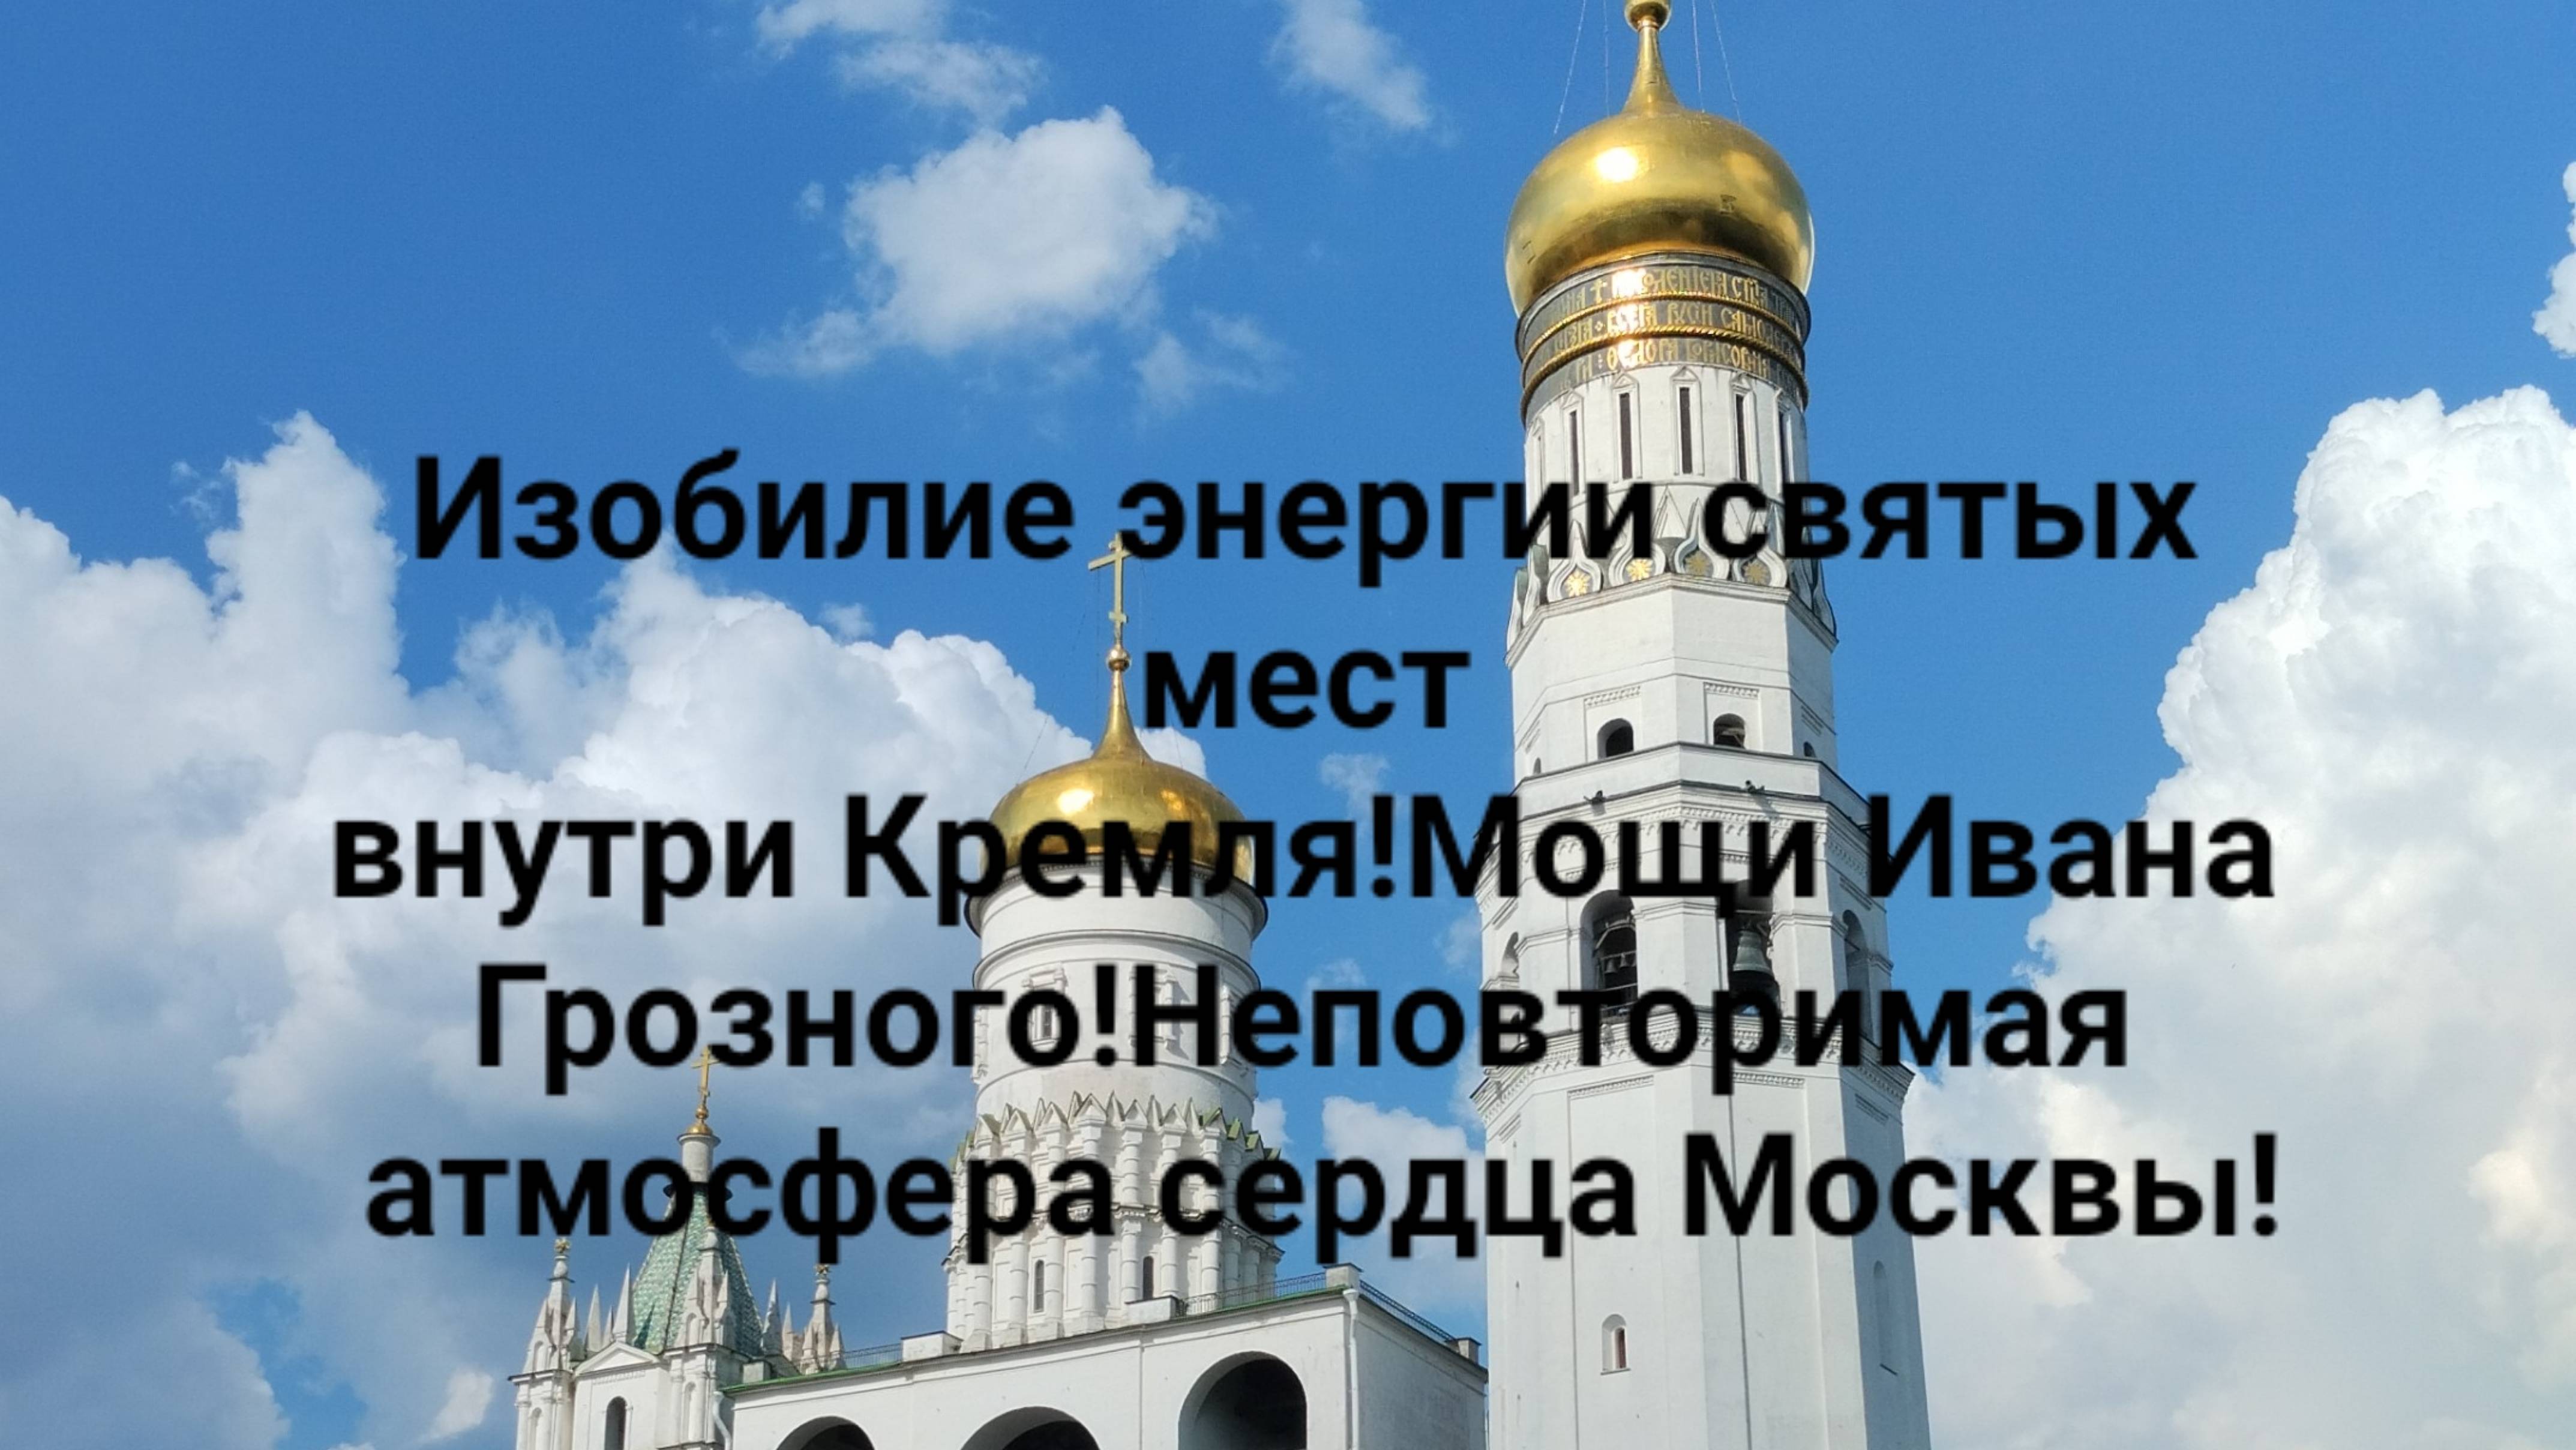 Изобилие энергии святых мест внутри Кремля!Мощи Ивана Грозного!Неповторимая атмосфера сердца Москвы!